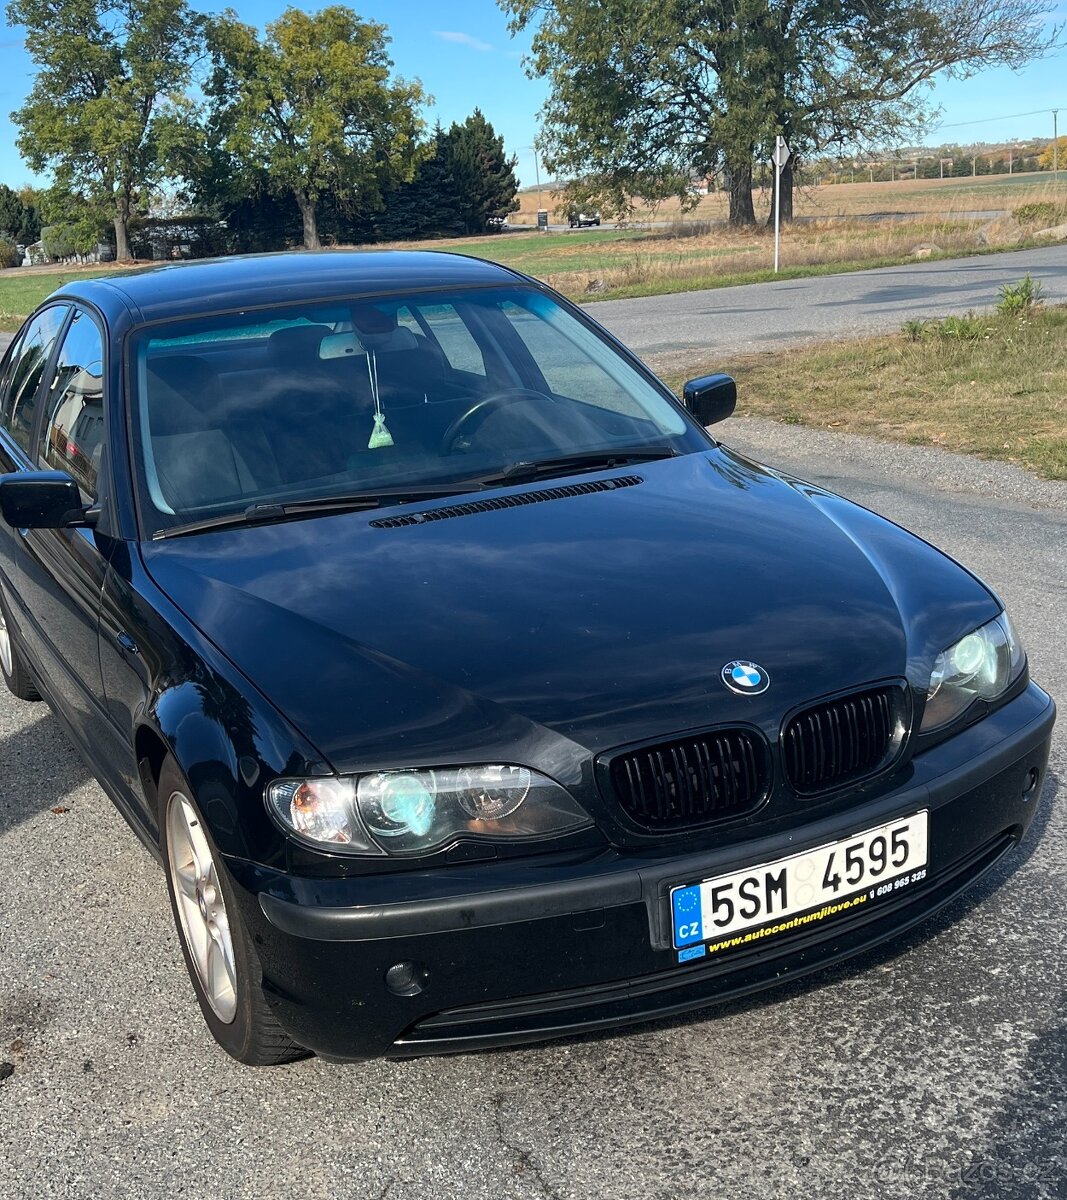 BMW E46 318i 105kw